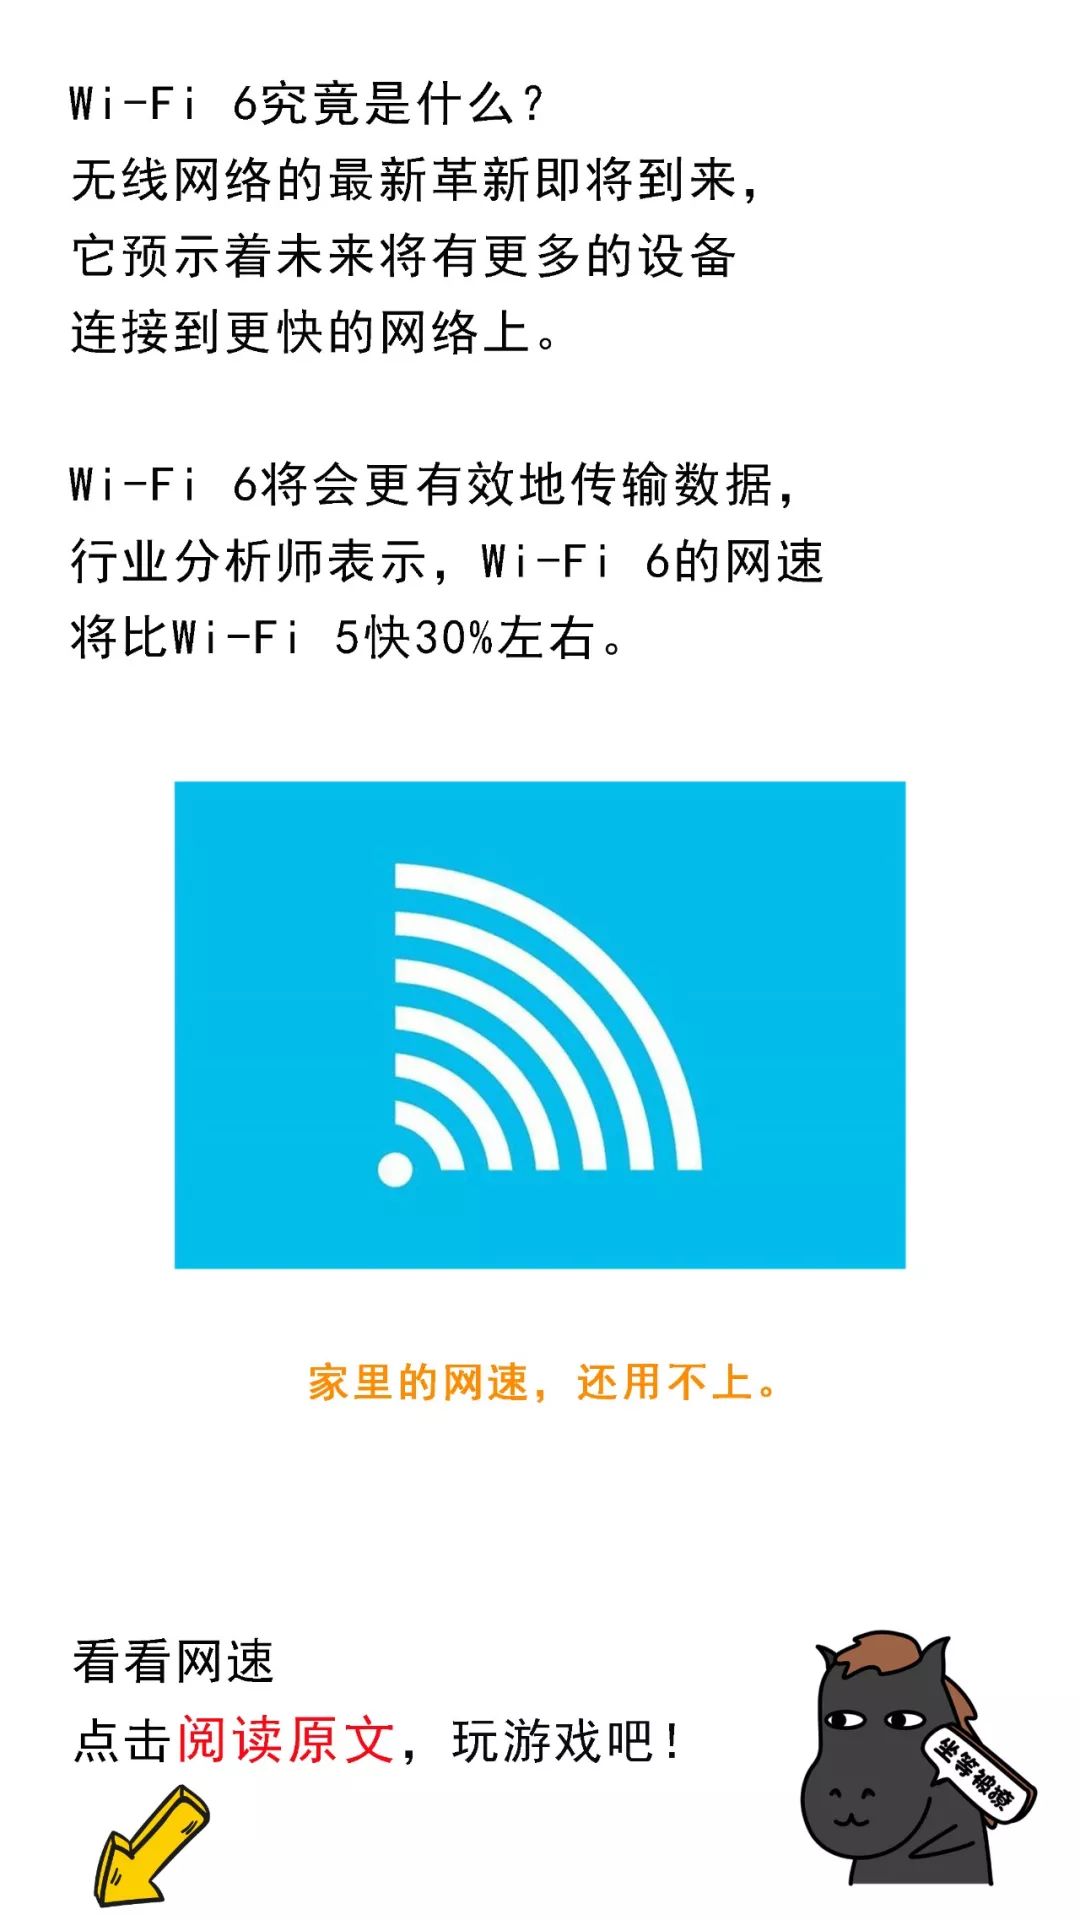 揭秘Wi-Fi 6，网速将提升30%！ | 游戏